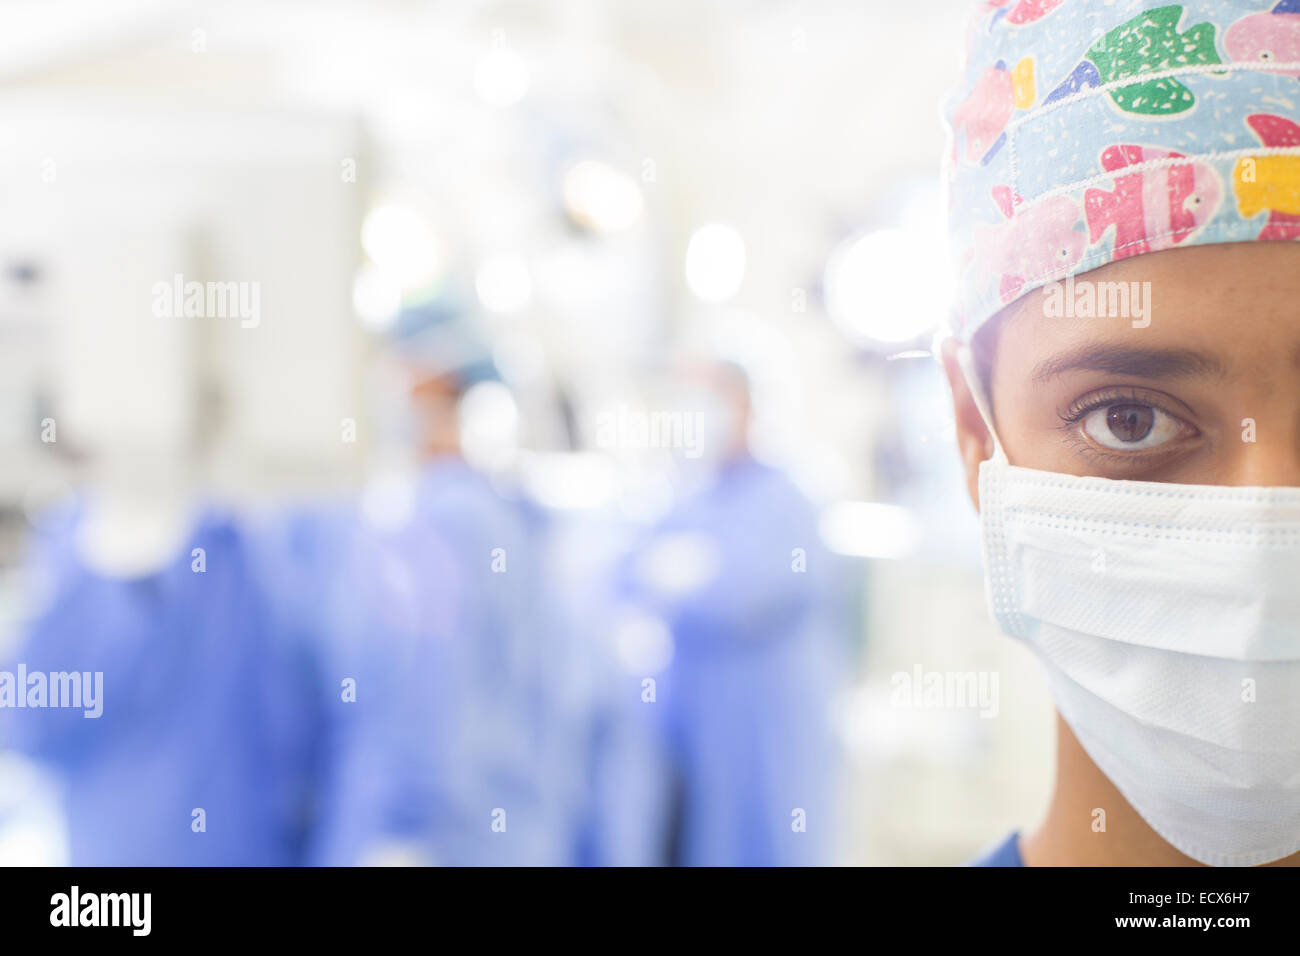 Ritratto di chirurgo mascherato con sfocate impostazione ospedaliera in background Foto Stock